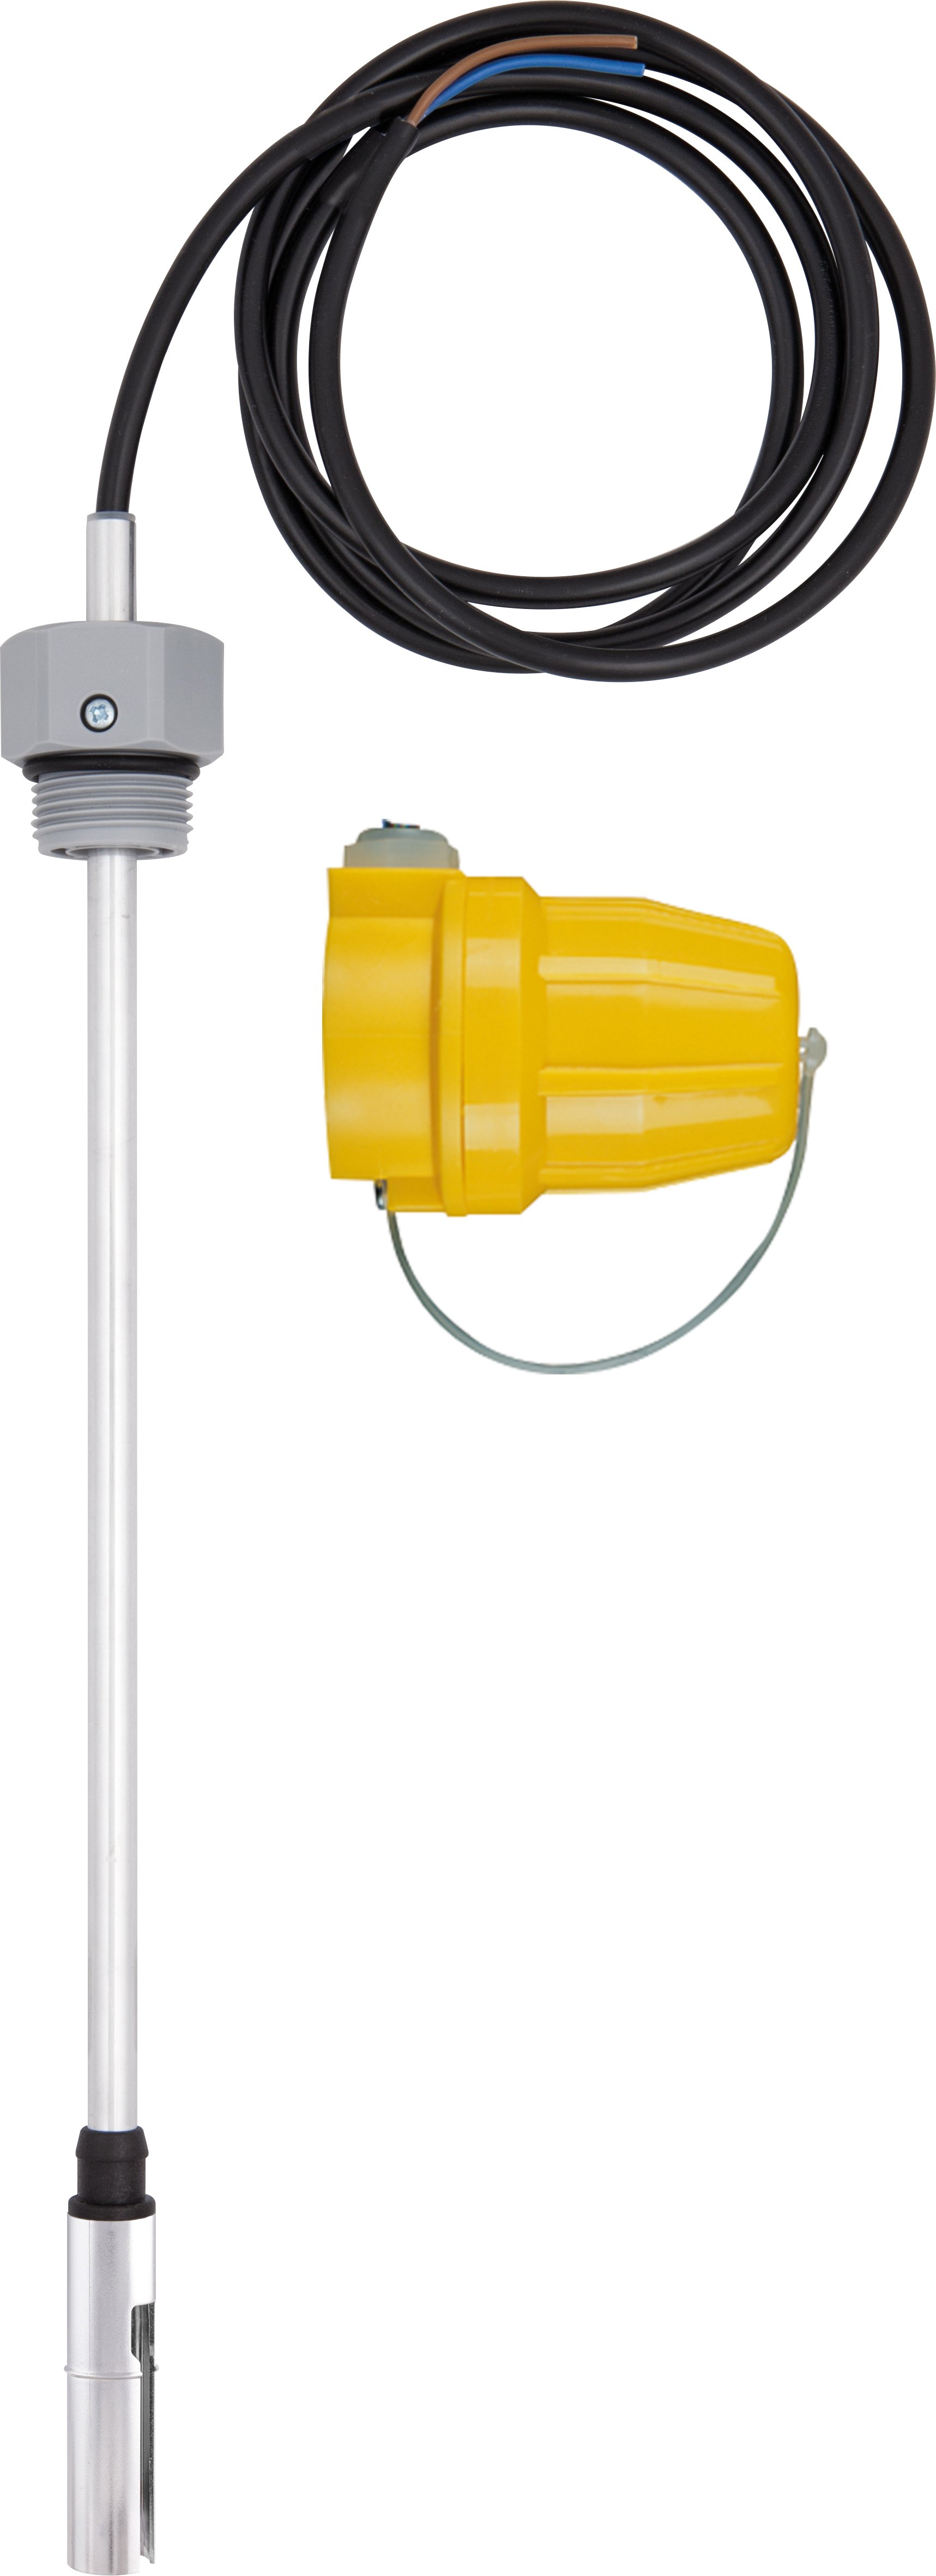 Termistorowy czujnik wartości granicznej GWG 12 K/1, 360 mm, G1", kabel 5 m, wtyczka żółta